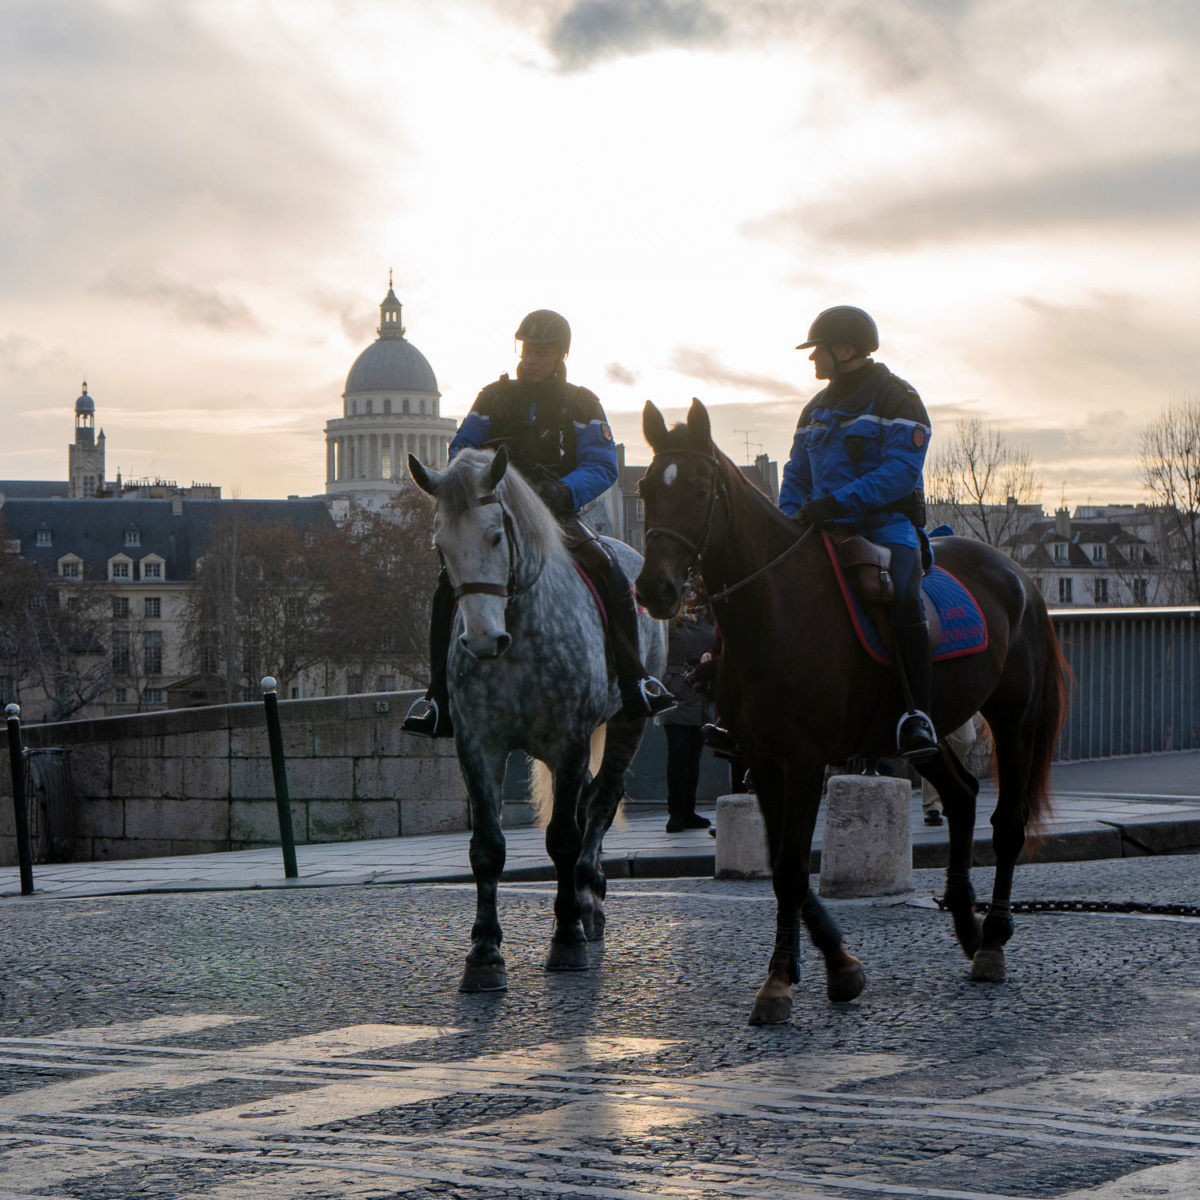 Paris police on horseback on Ile St. Louis. More at une femme d'un certain age.